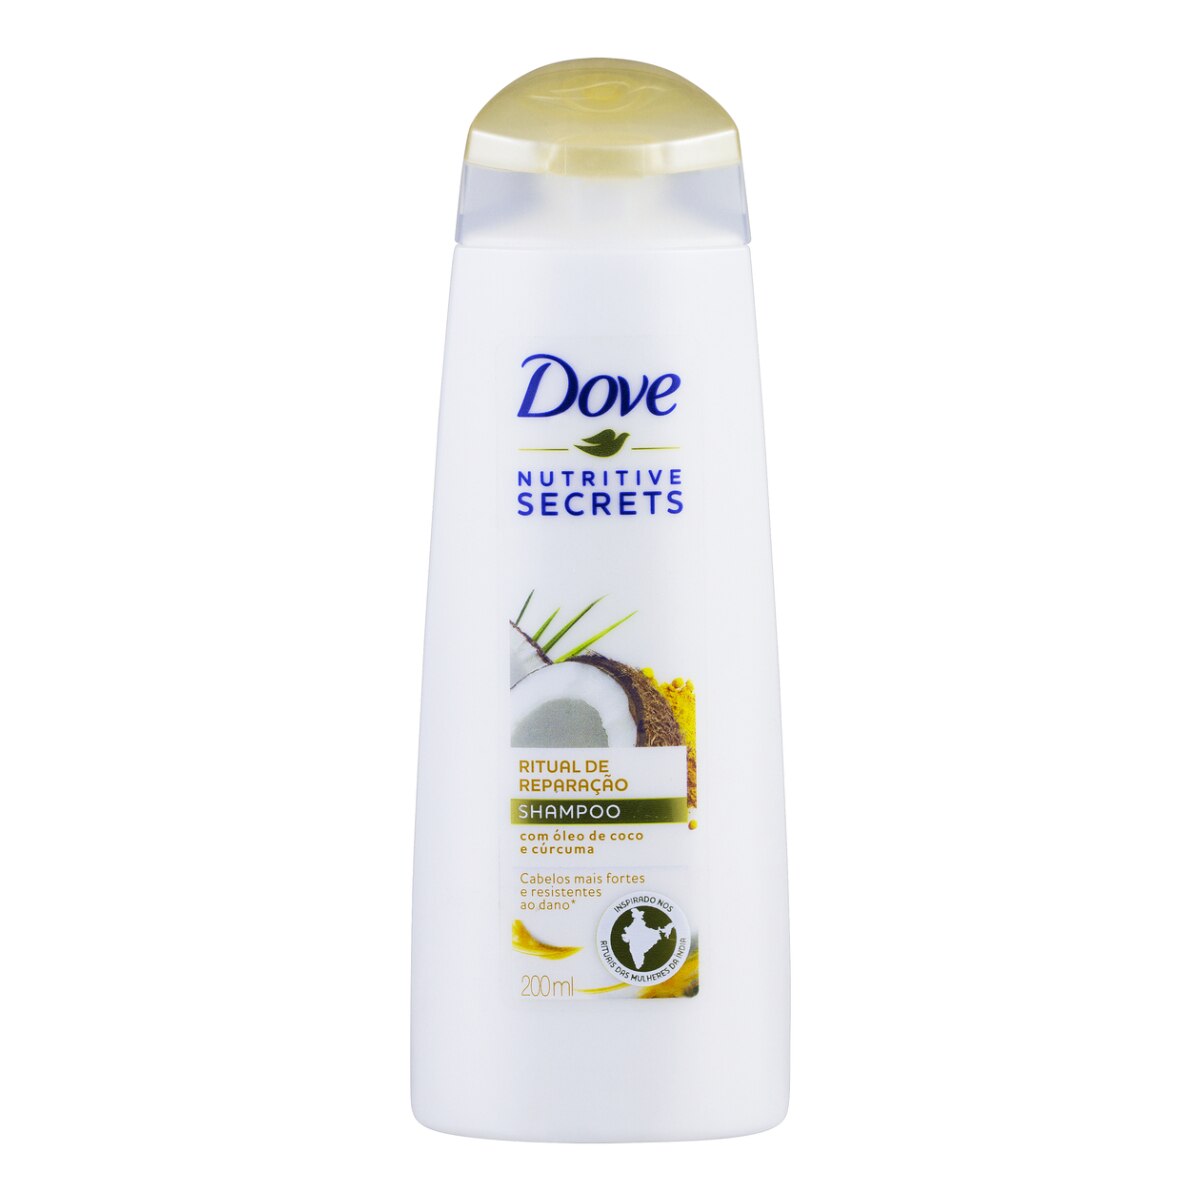 Shampoo Dove Ritual de Reparacao 200ml